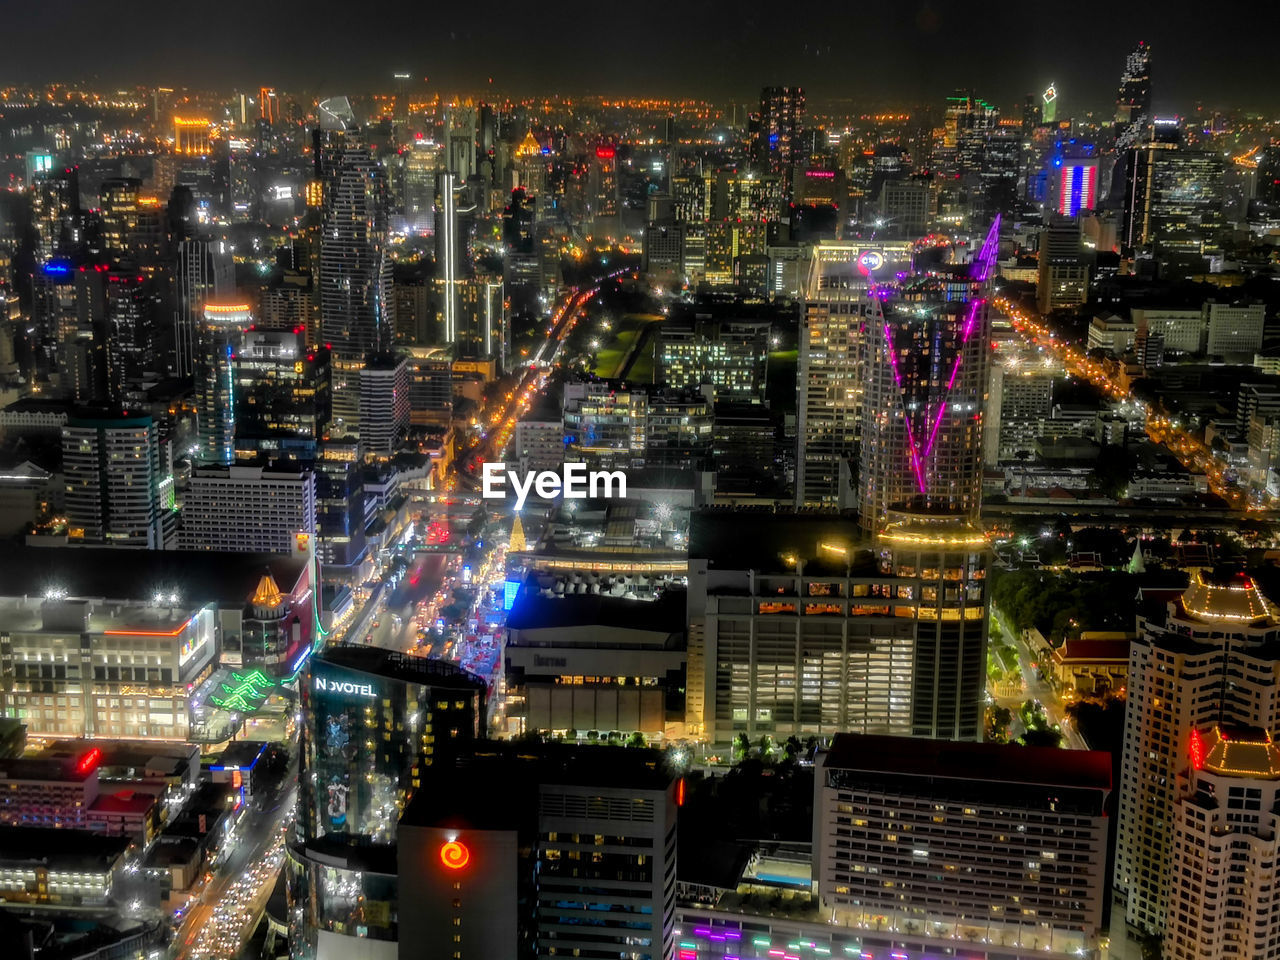 High angle view of illuminated bangkok city buildings at night